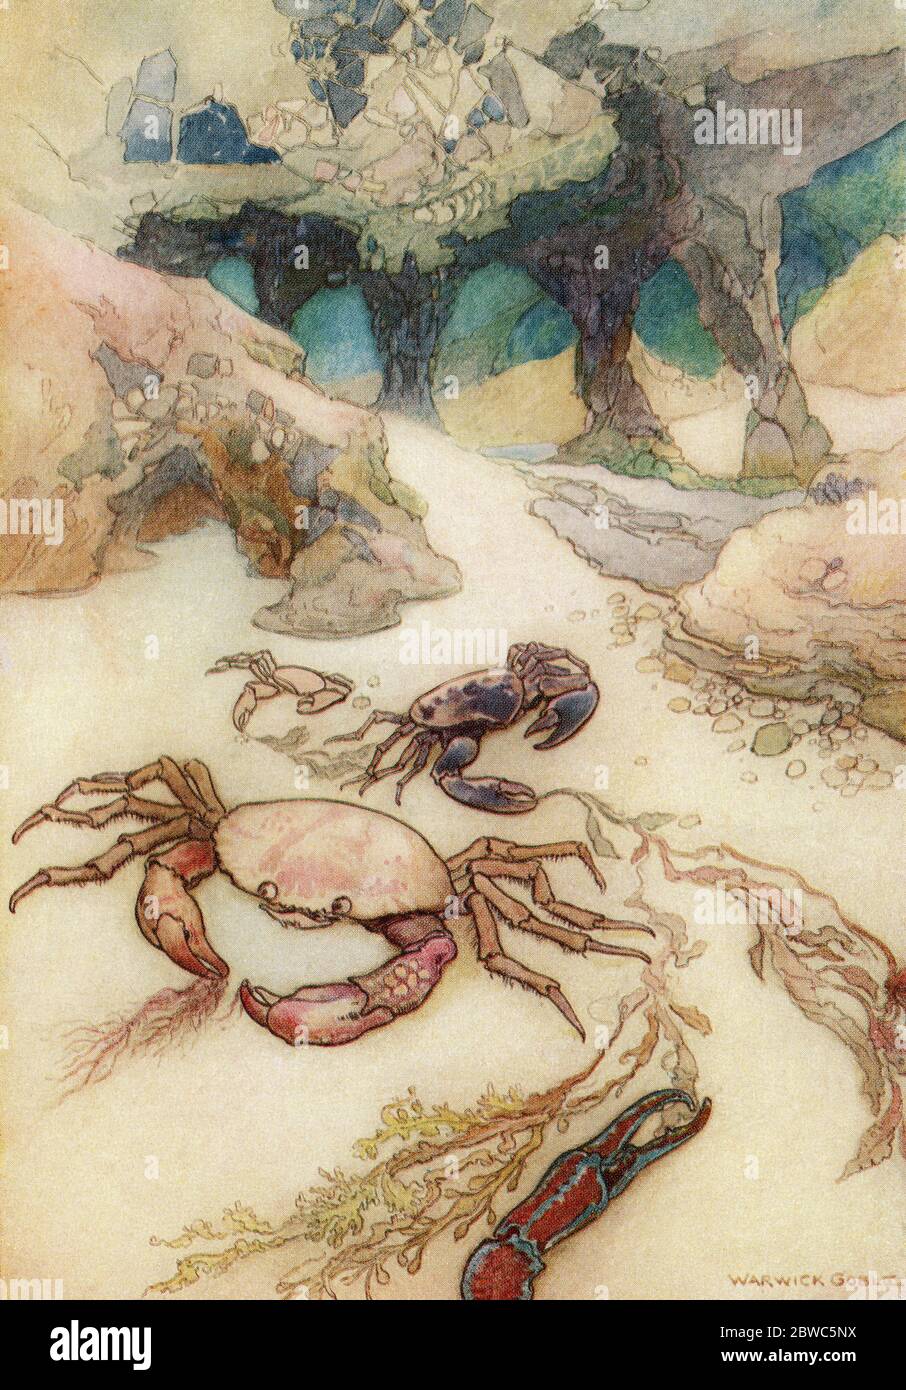 'Tom fand, dass die Insel auf Säulen stand und dass ihre Wurzeln voller Höhlen waren', Illustration von Warwick Goble. Aus den Wasserbabys, veröffentlicht 1922. Stockfoto